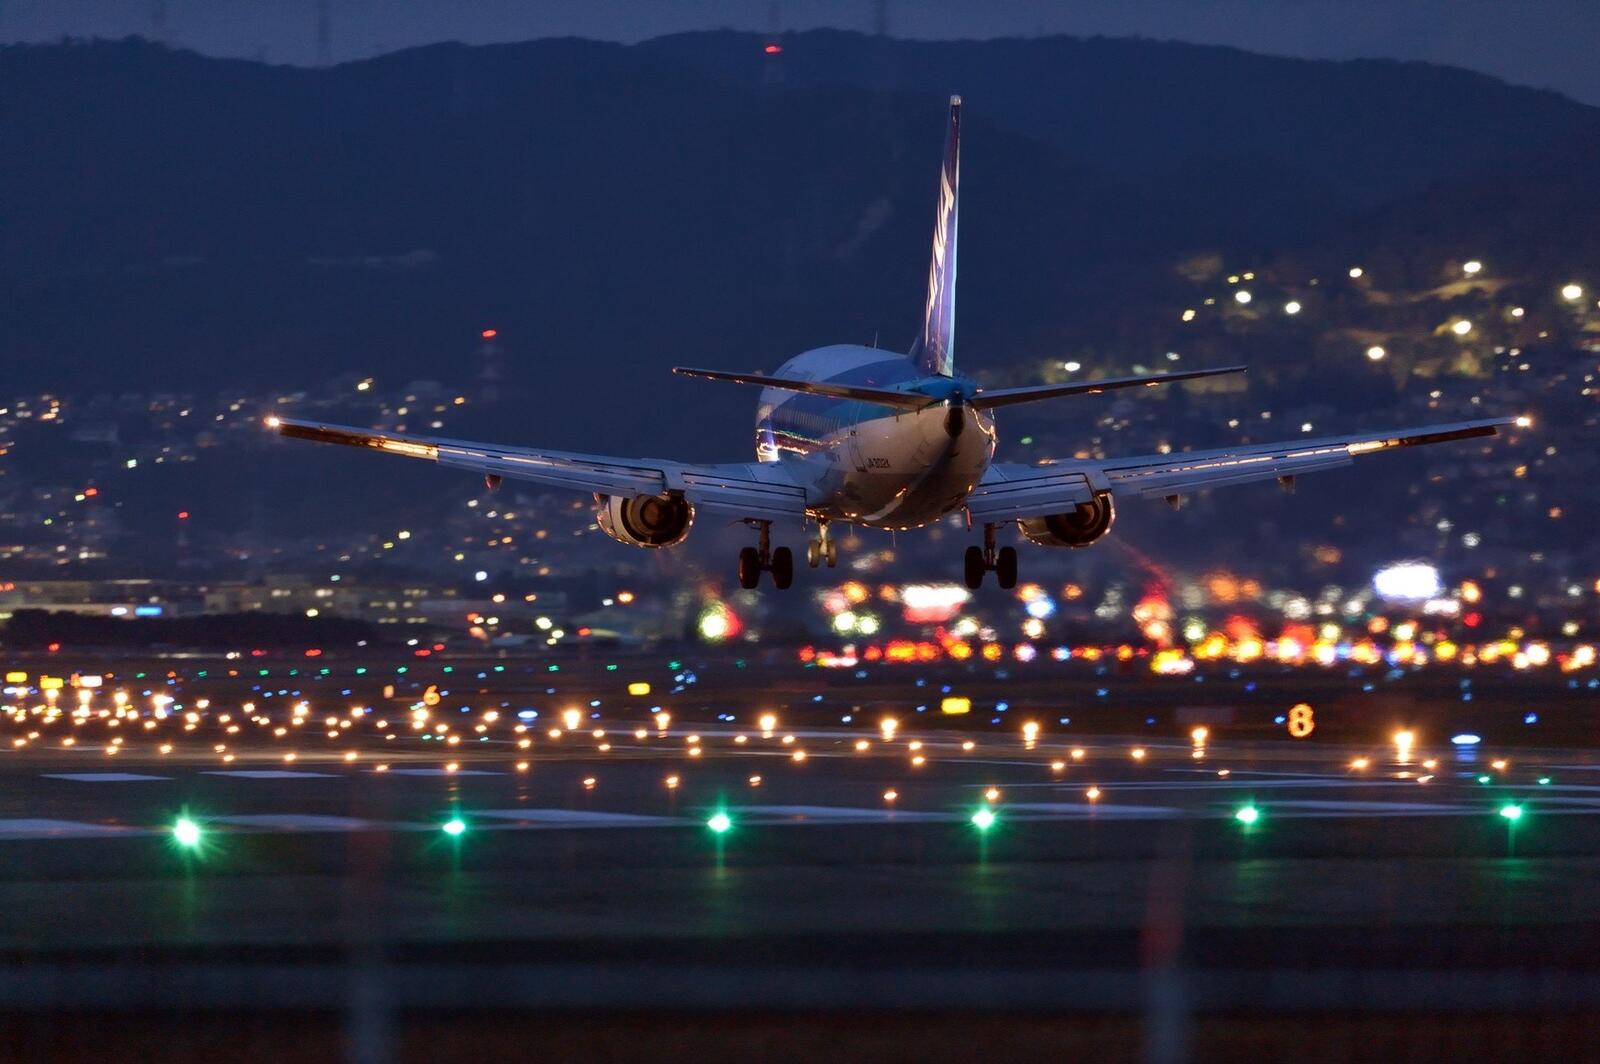 Бесплатное фото Самолет приземляется на ночную взлетную полосу